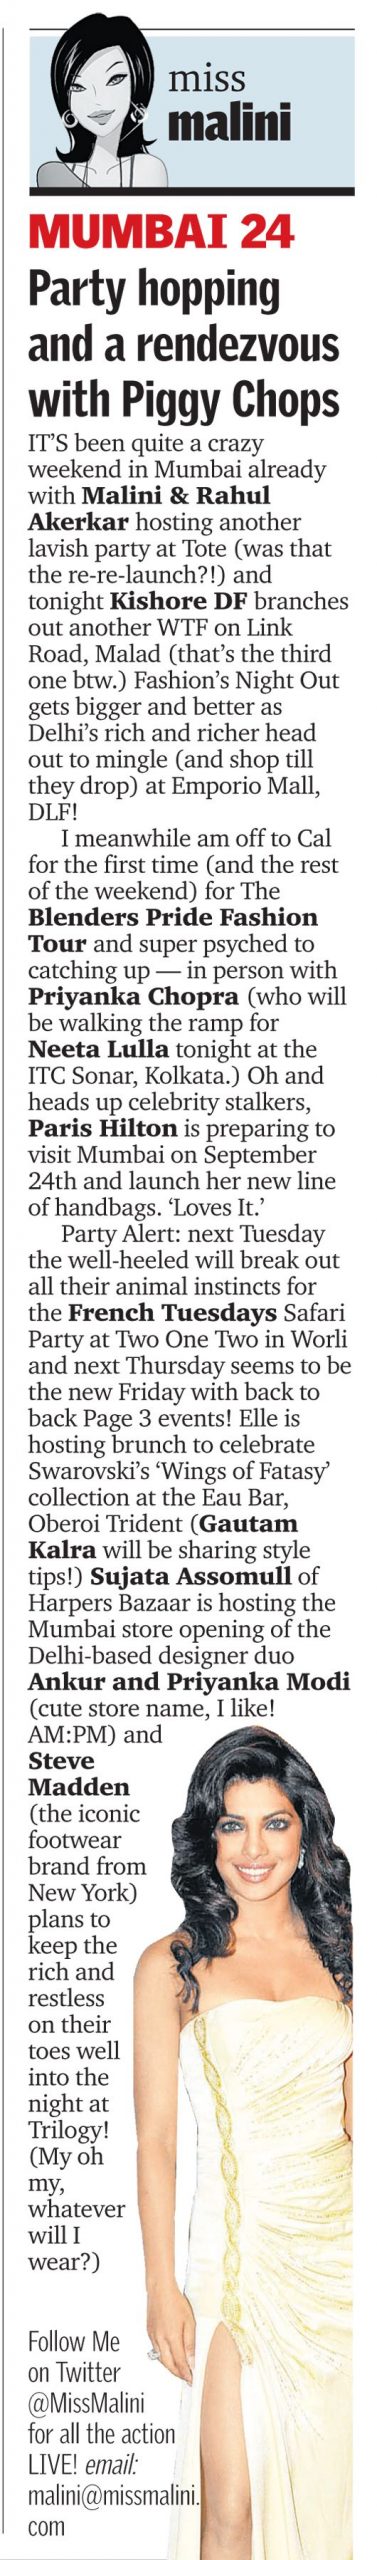 MissMalini in Mid Day Mumbai – Party Hopping!